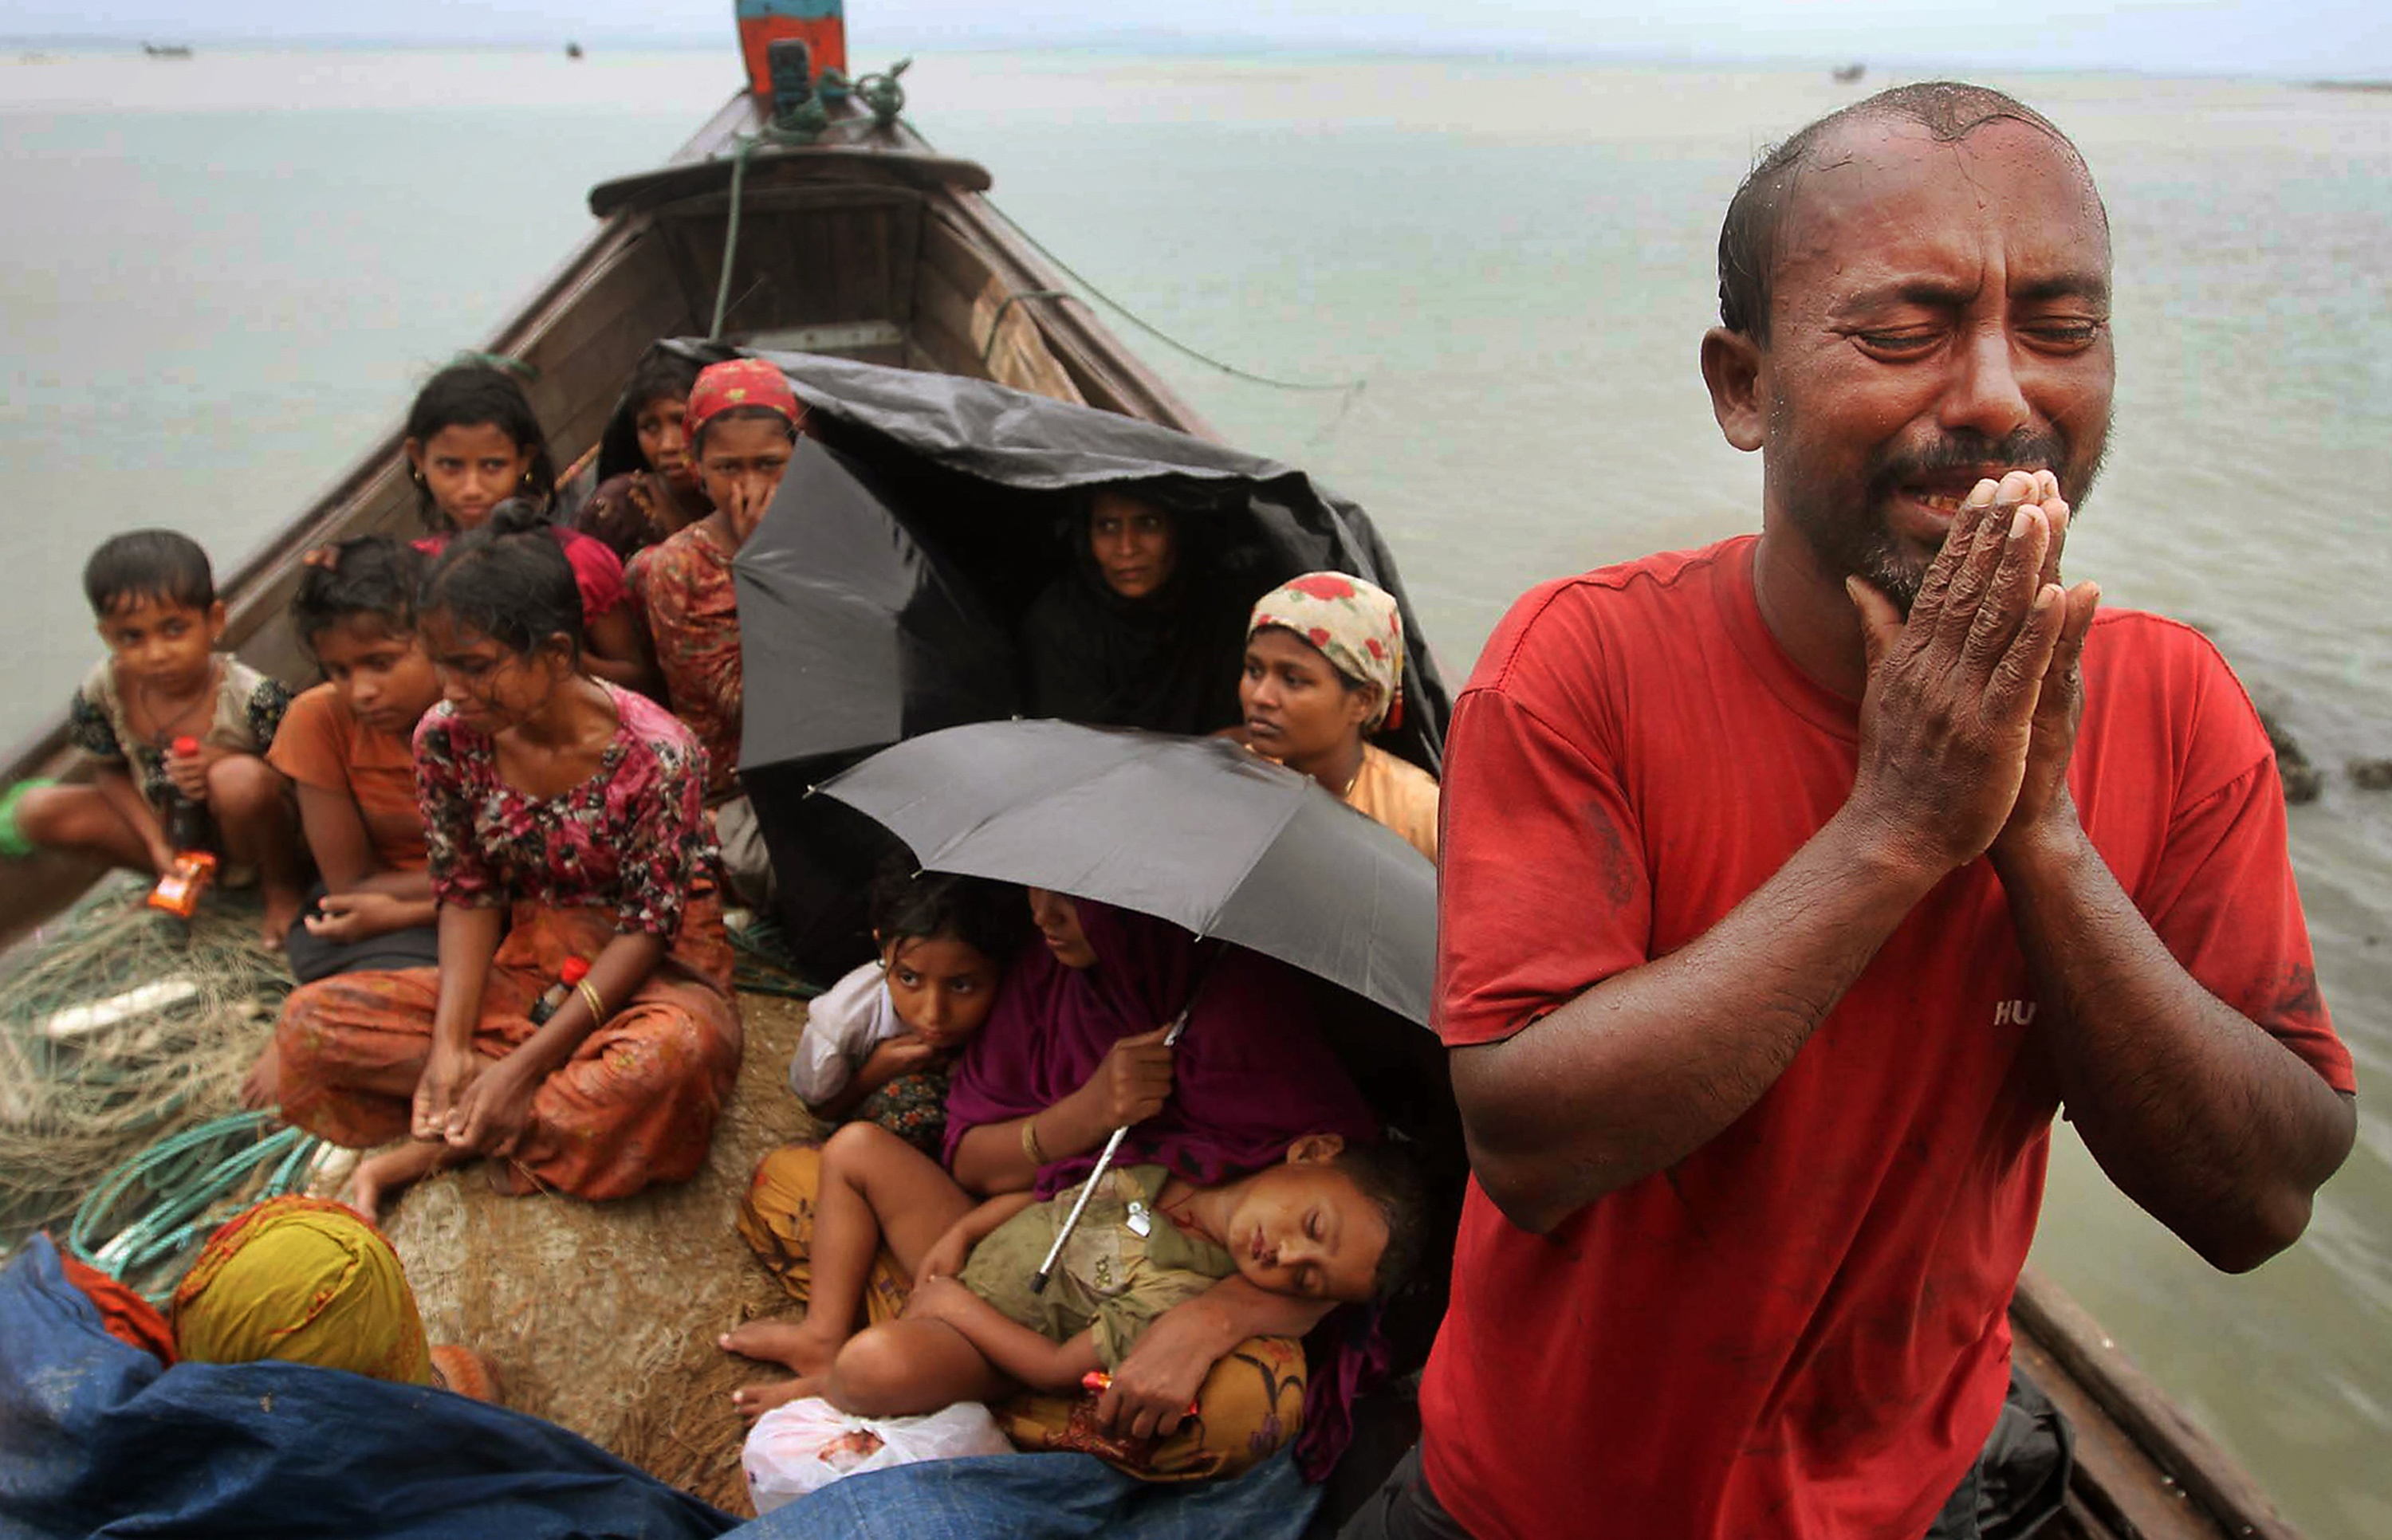 Етнічна меншість М’янми – рохінджа – змушена тікати від погромів та підпалів, емігруючи, зокрема, до сусідньої Бангладеш